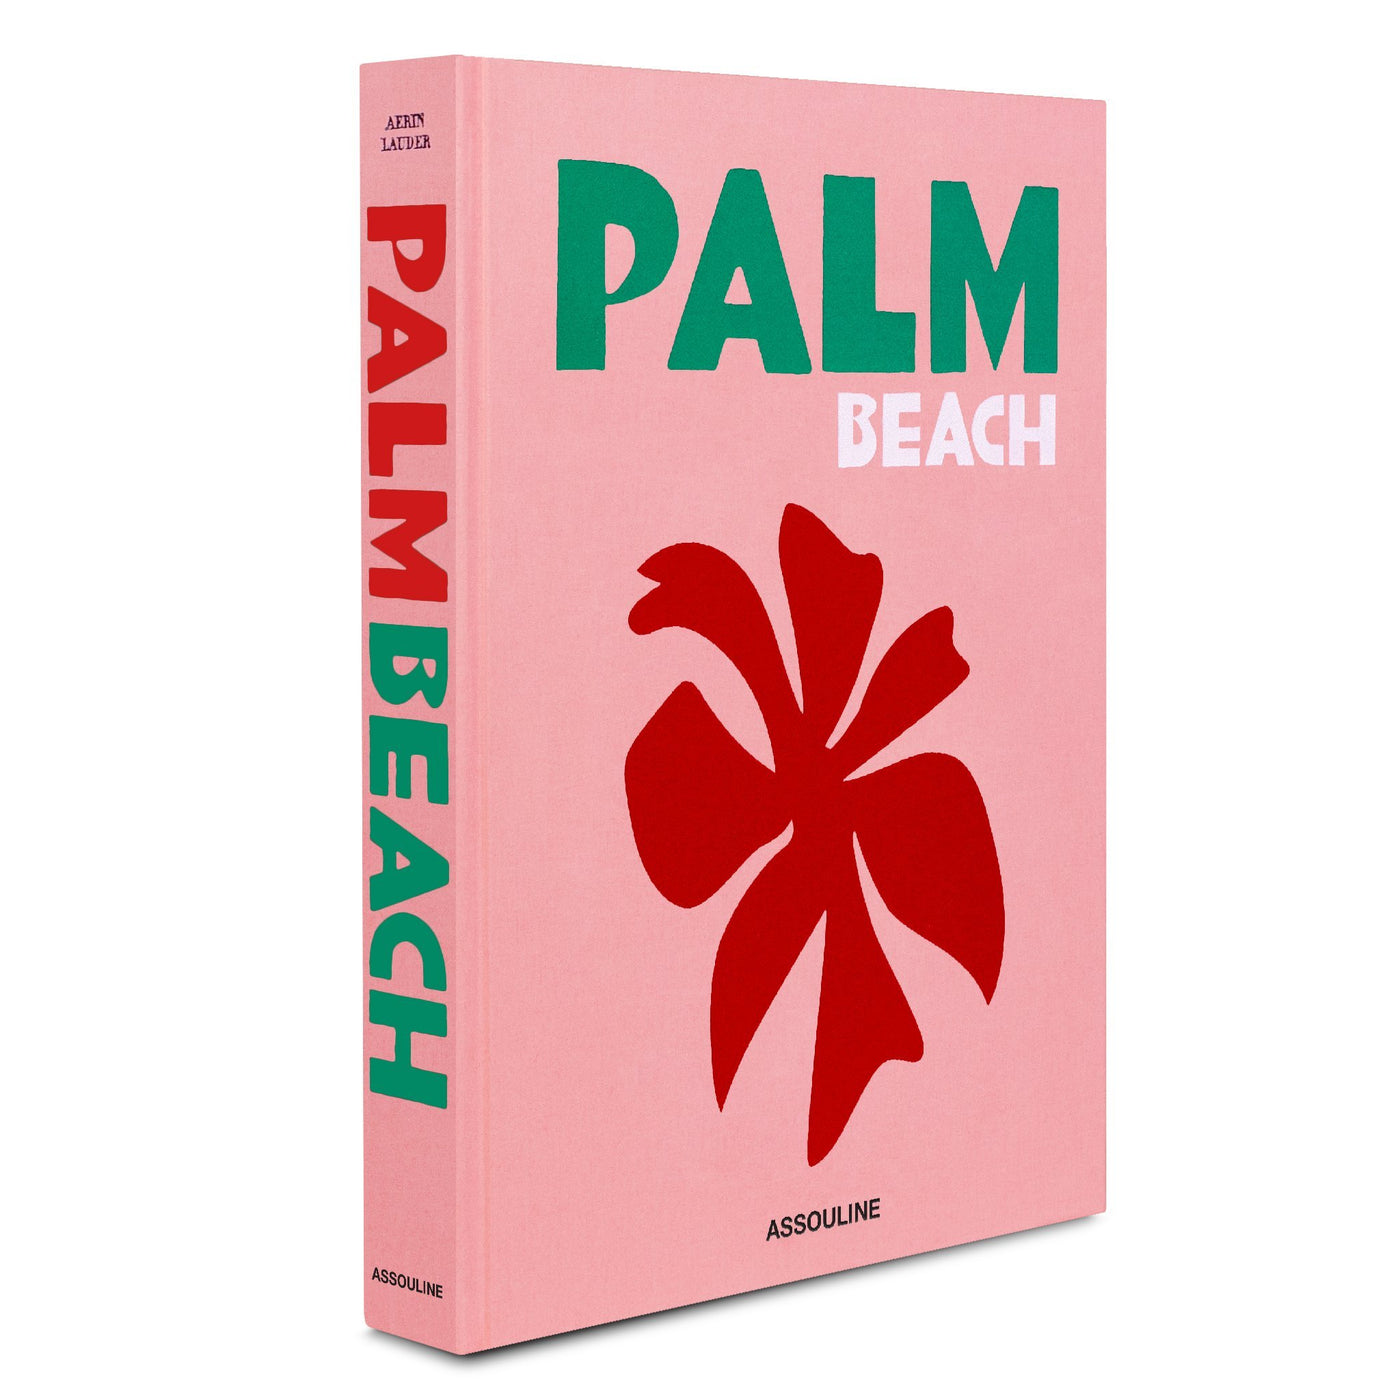 Palm Beach by Aerin Lauder - Trellis Home